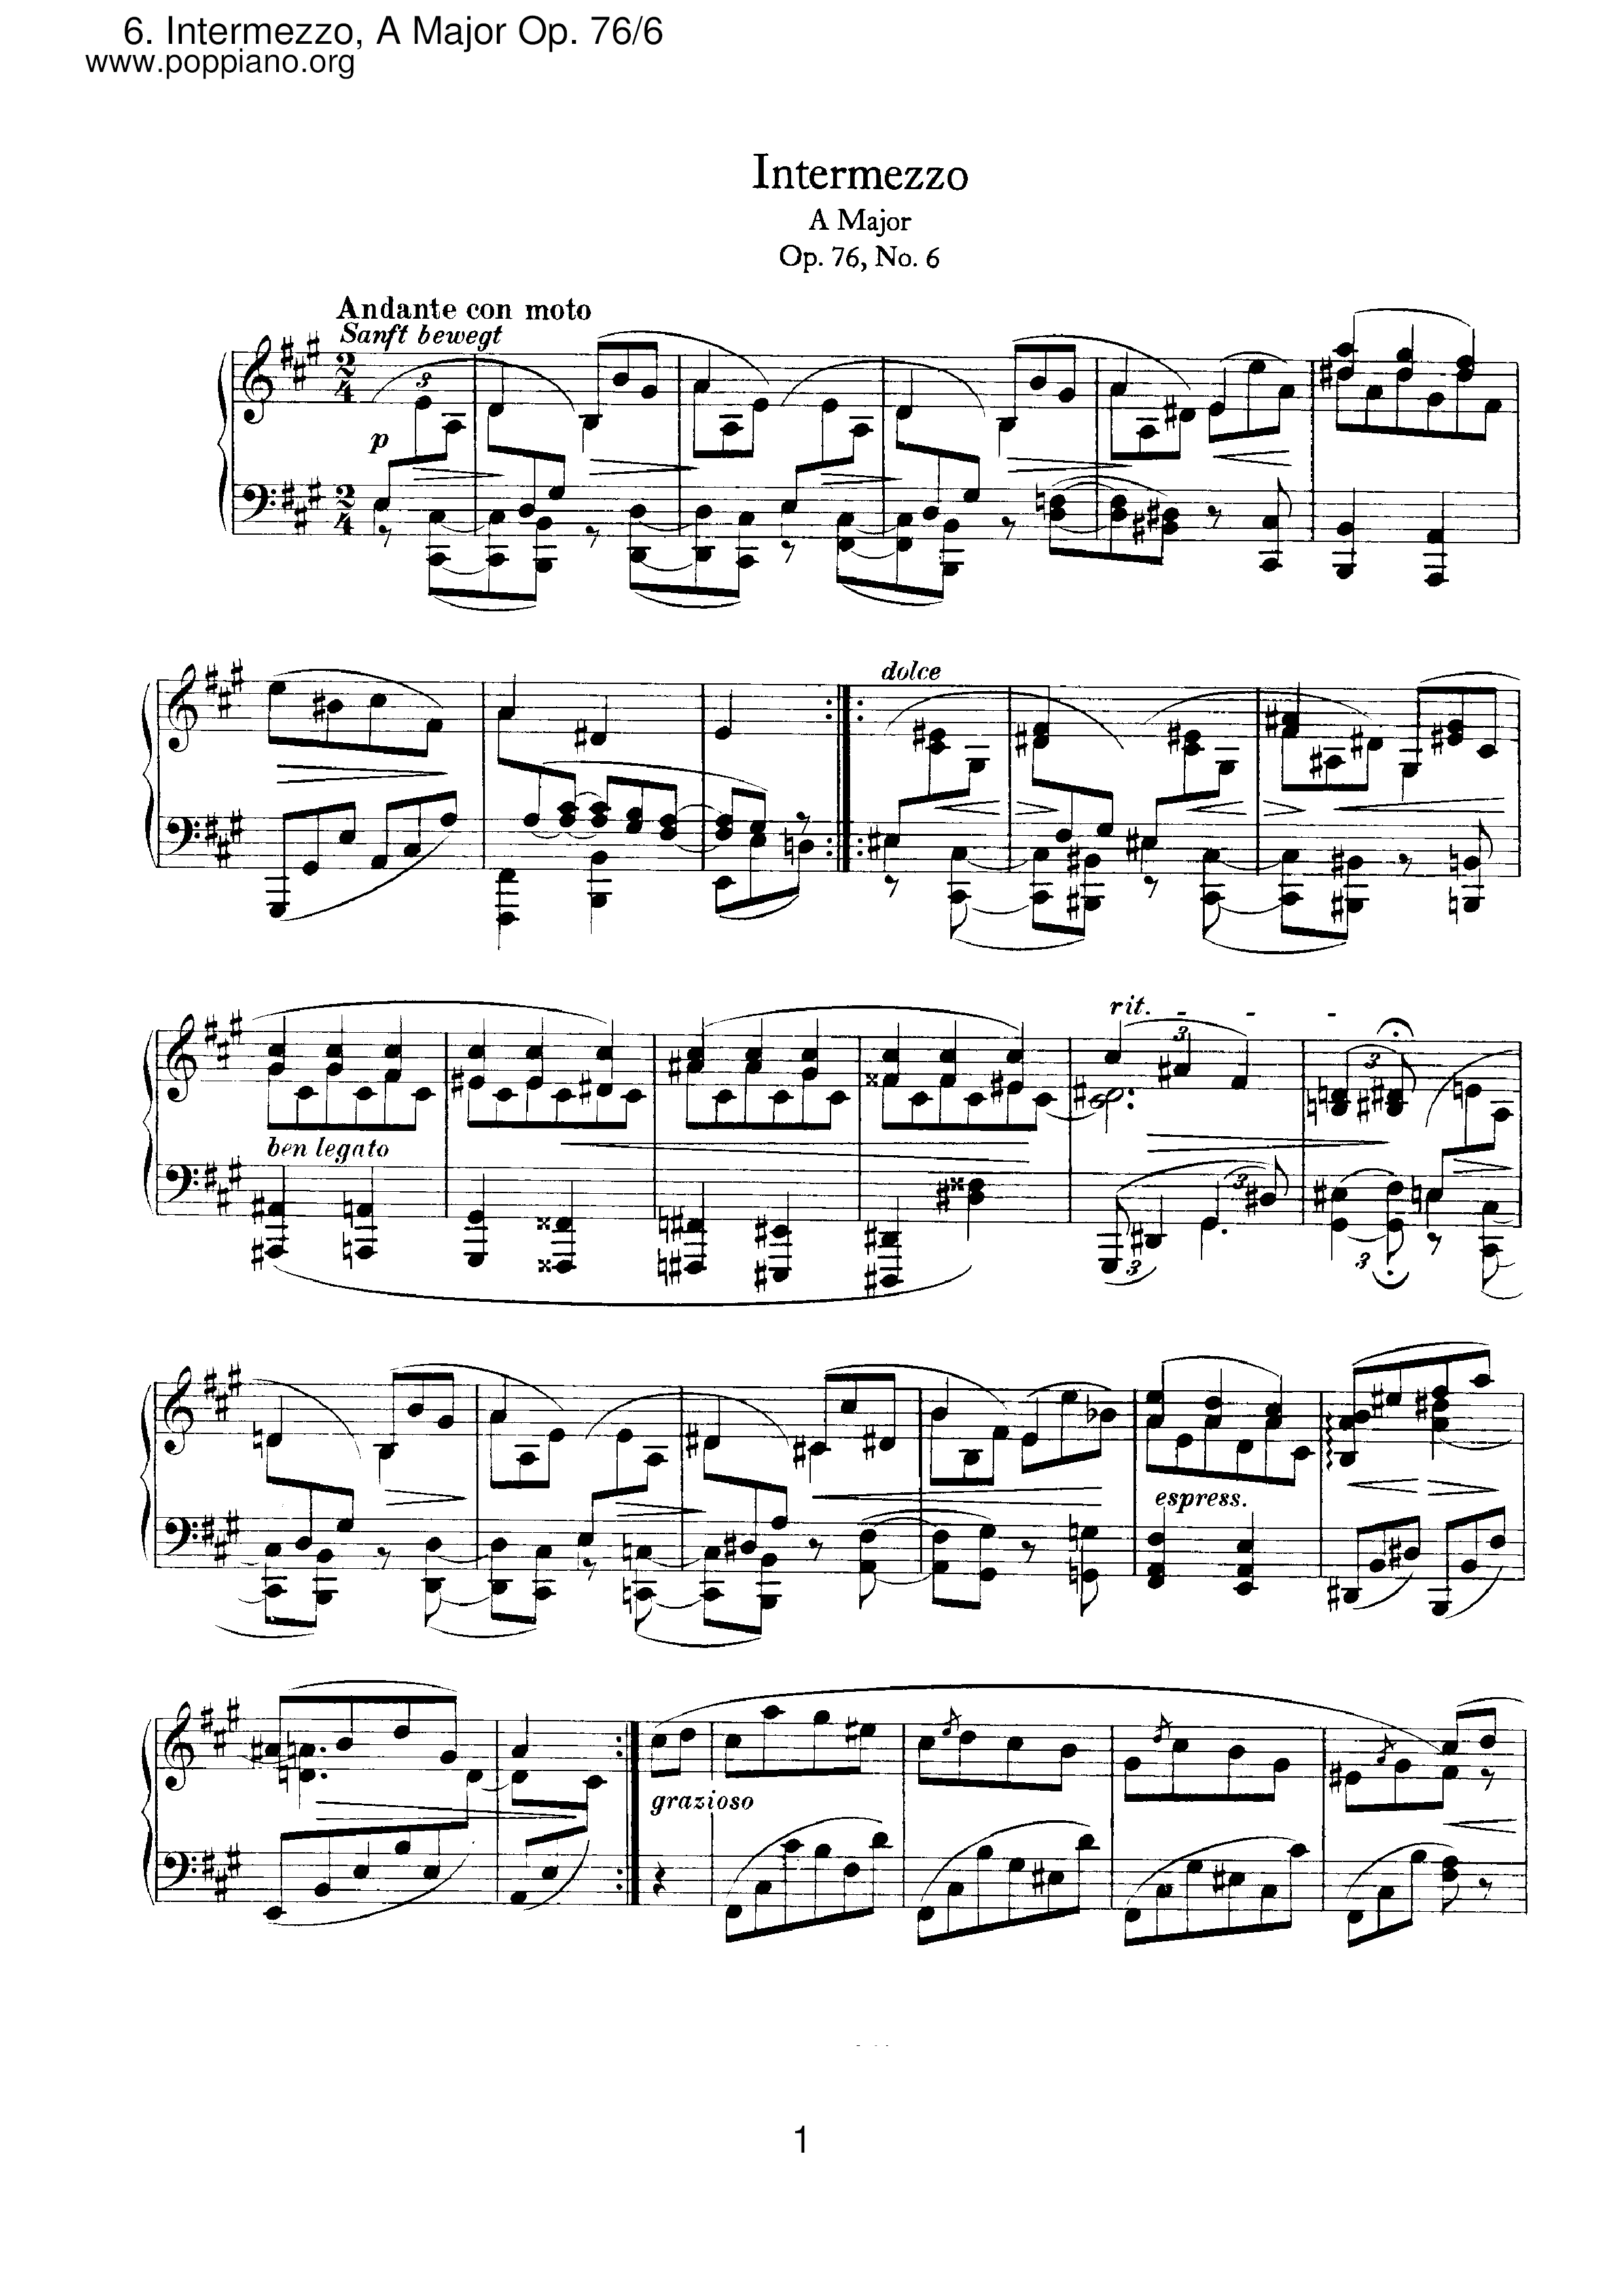 Intermezzo No. 6 in A Major, Op. 76 - Andante con moto琴譜